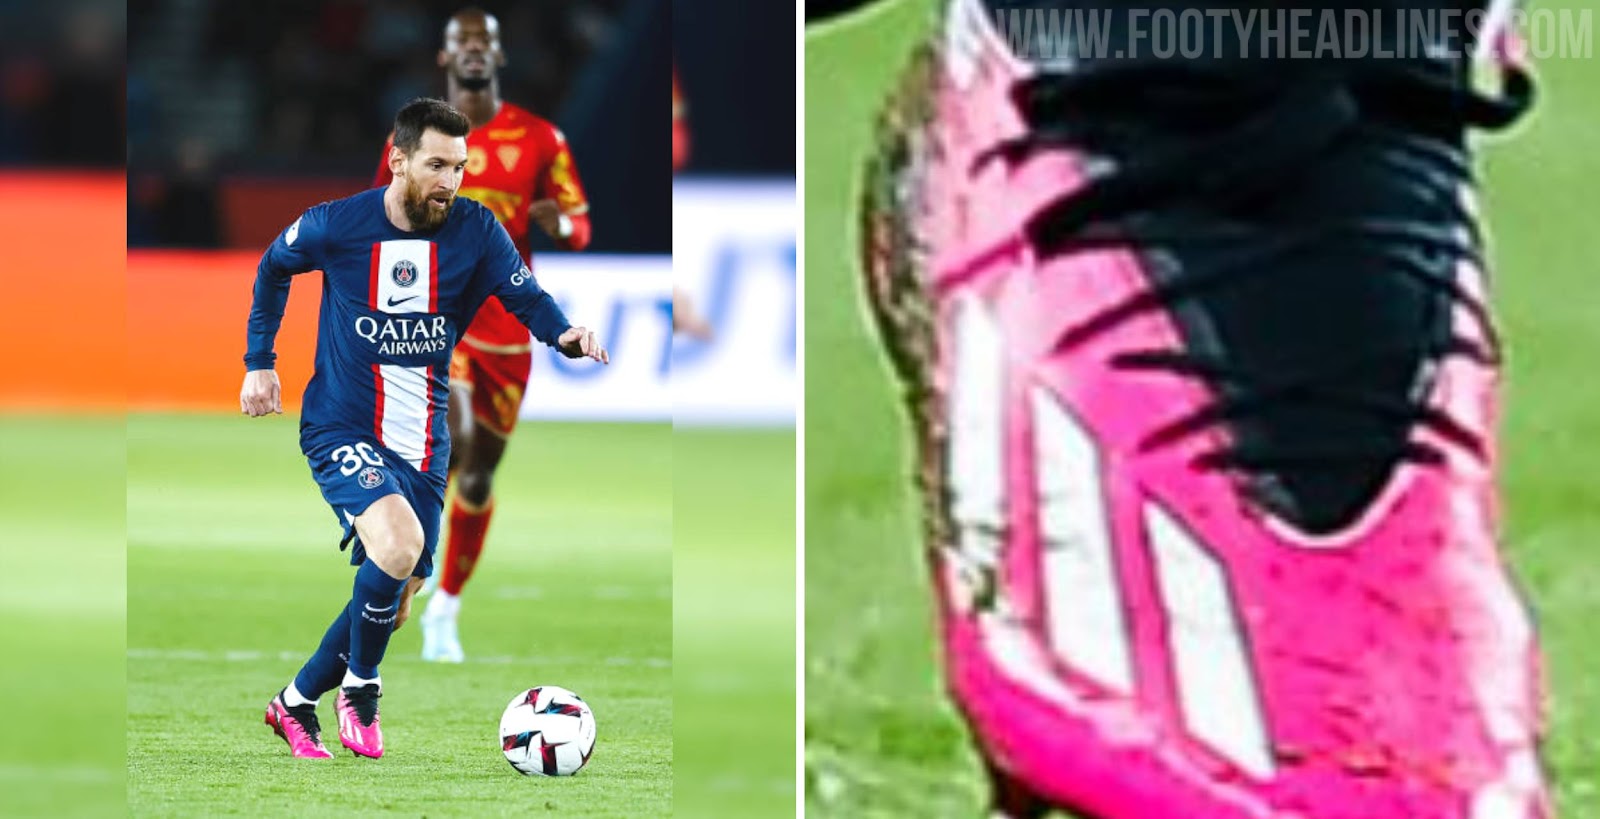 comestible Incidente, evento Estar confundido Messi & Donnarumma Wear Unreleased (Next-Gen) Adidas Predator & X Boots -  Footy Headlines